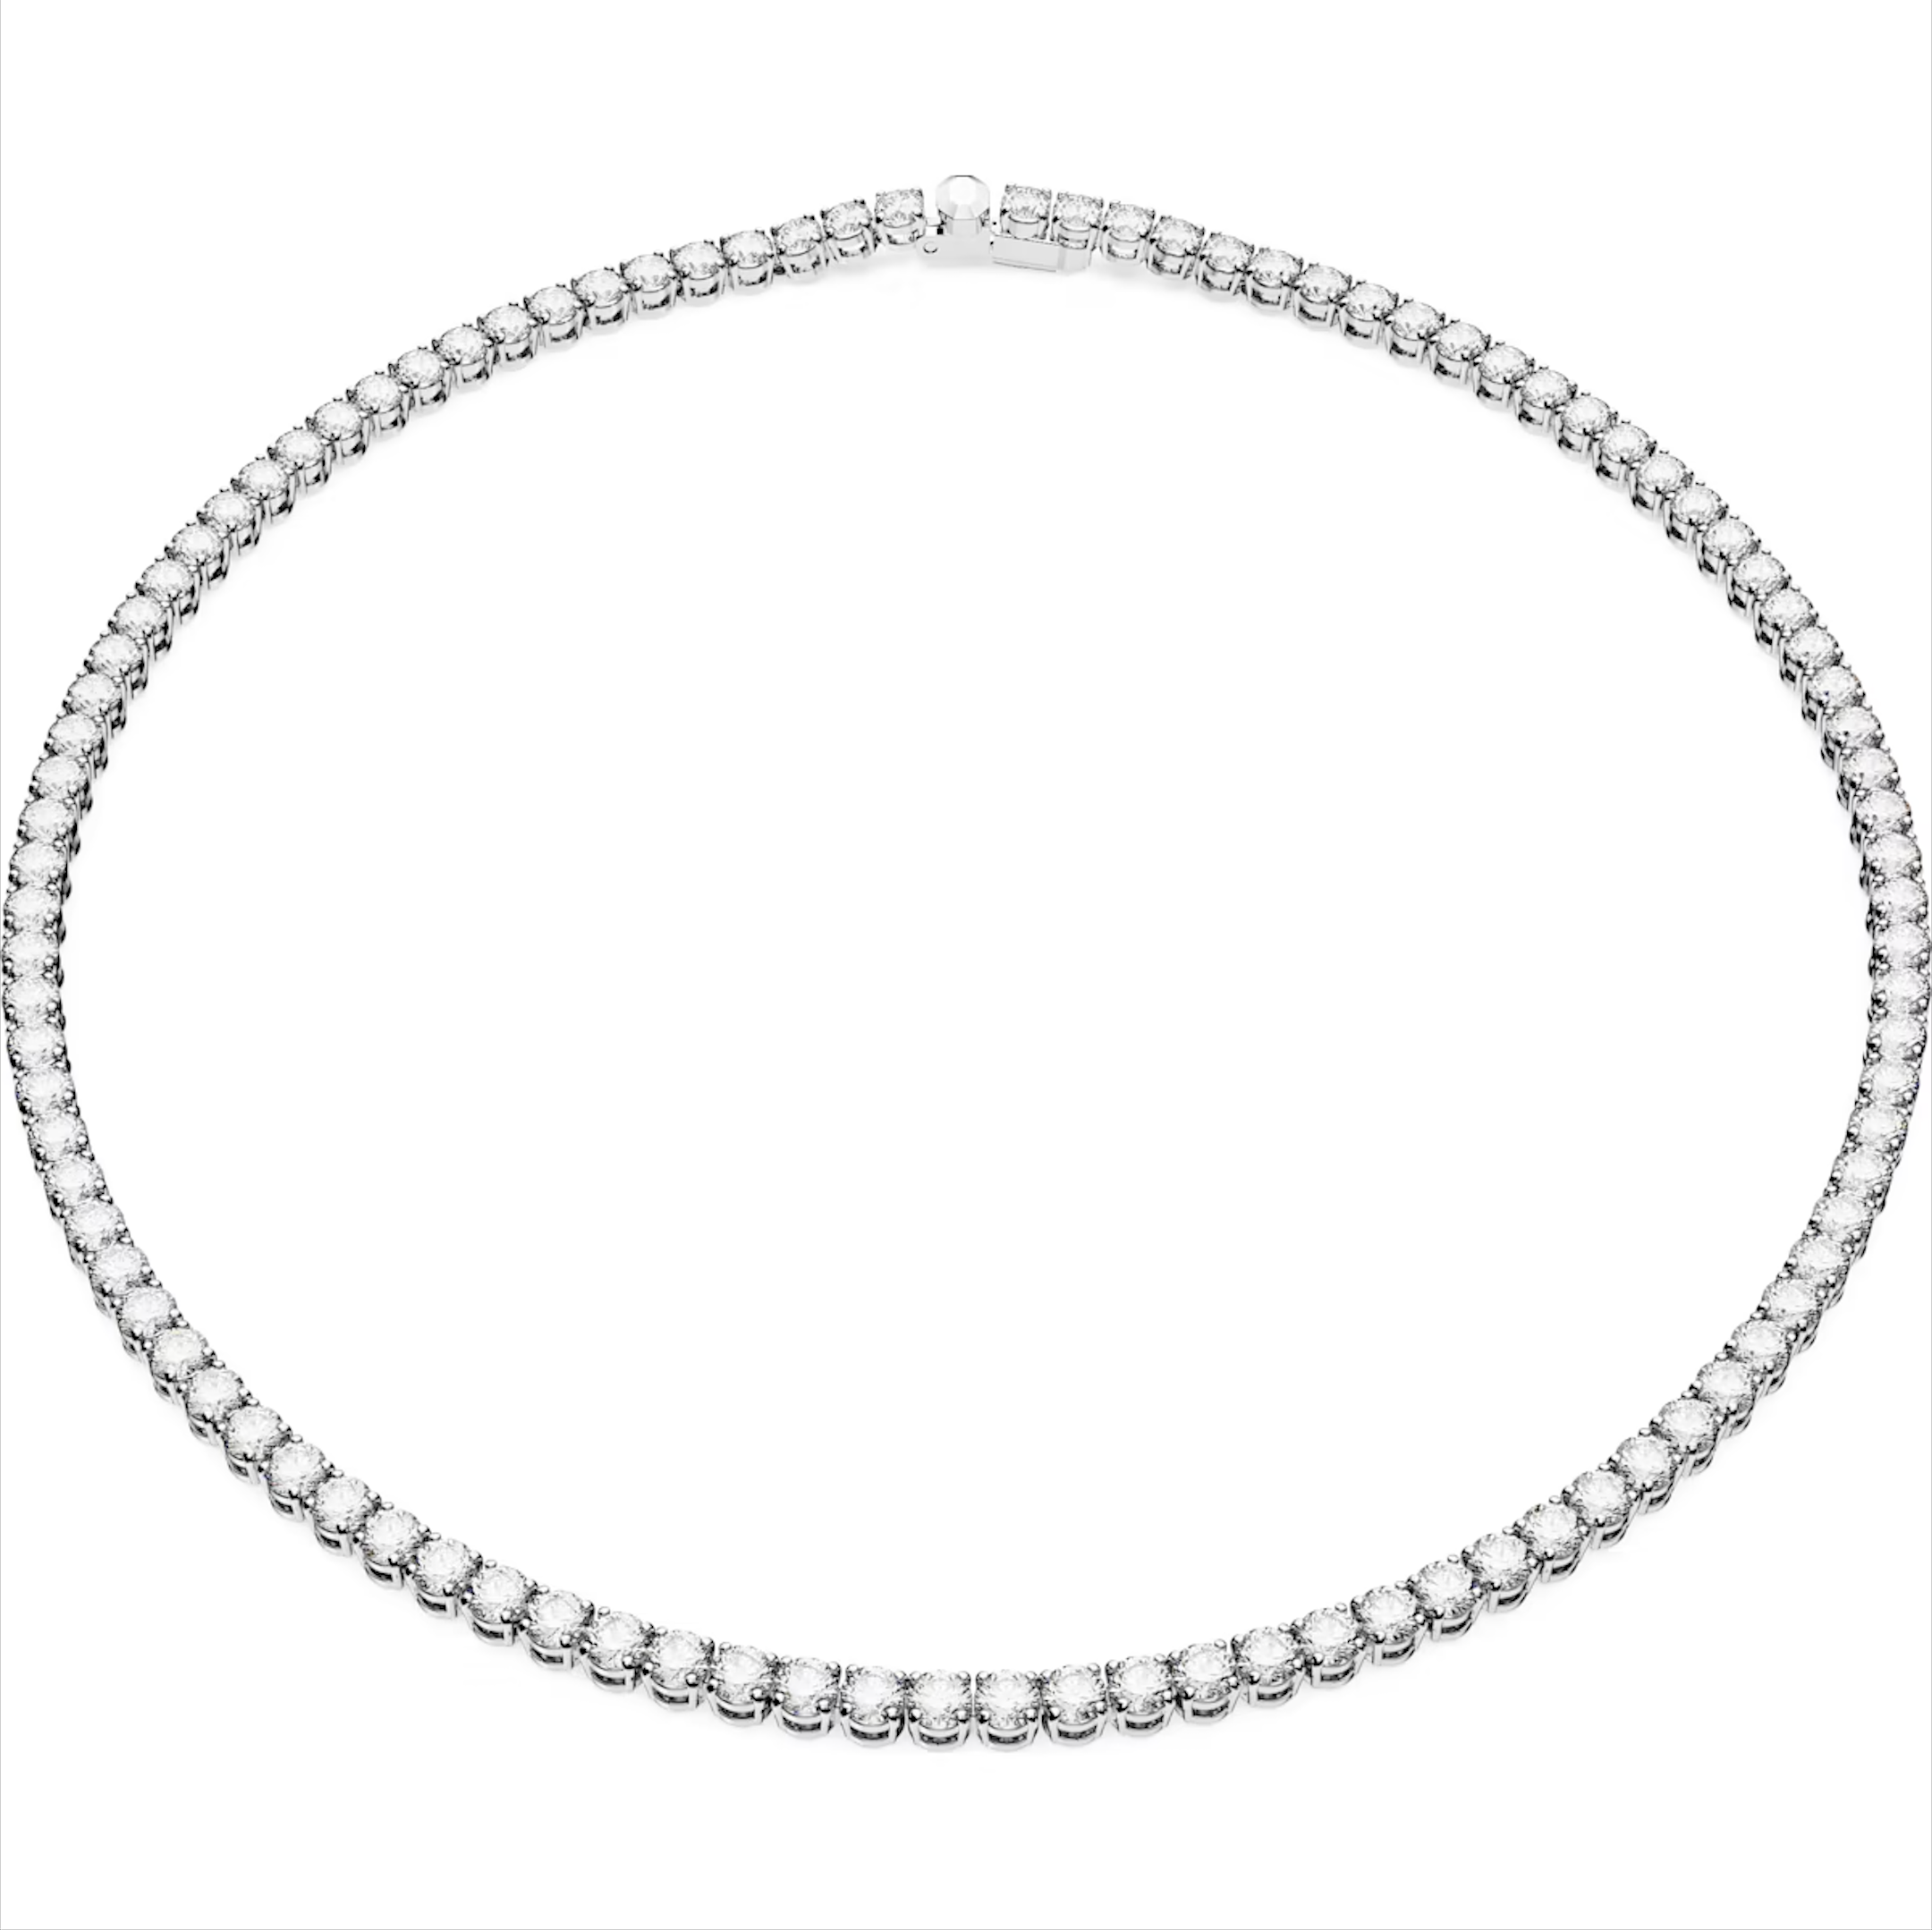 Swarovski Matrix Rhodium Plated Round White Crystal Tennis Necklace